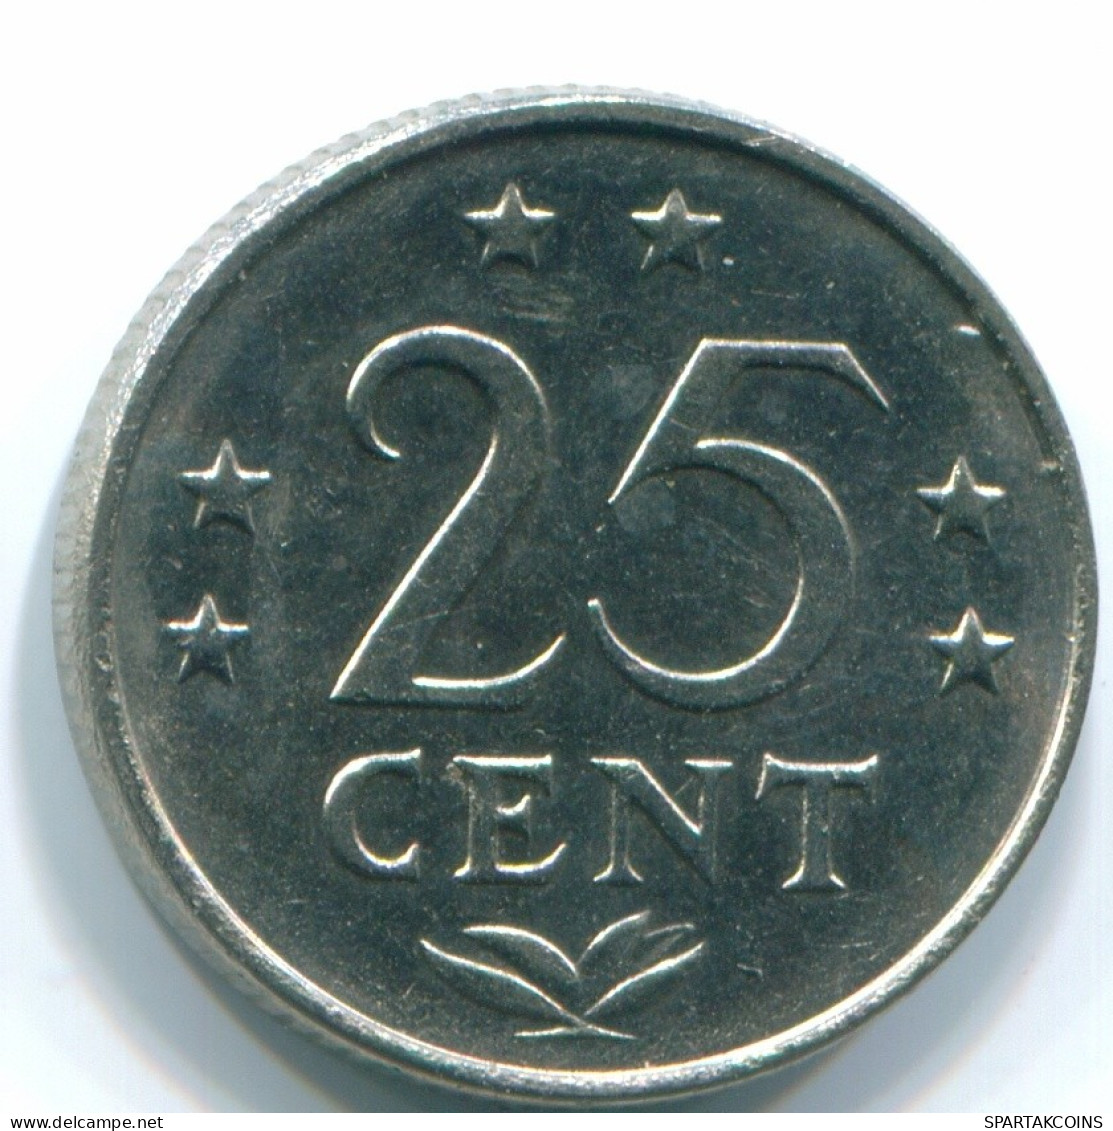 25 CENTS 1979 NIEDERLÄNDISCHE ANTILLEN Nickel Koloniale Münze #S11647.D.A - Niederländische Antillen